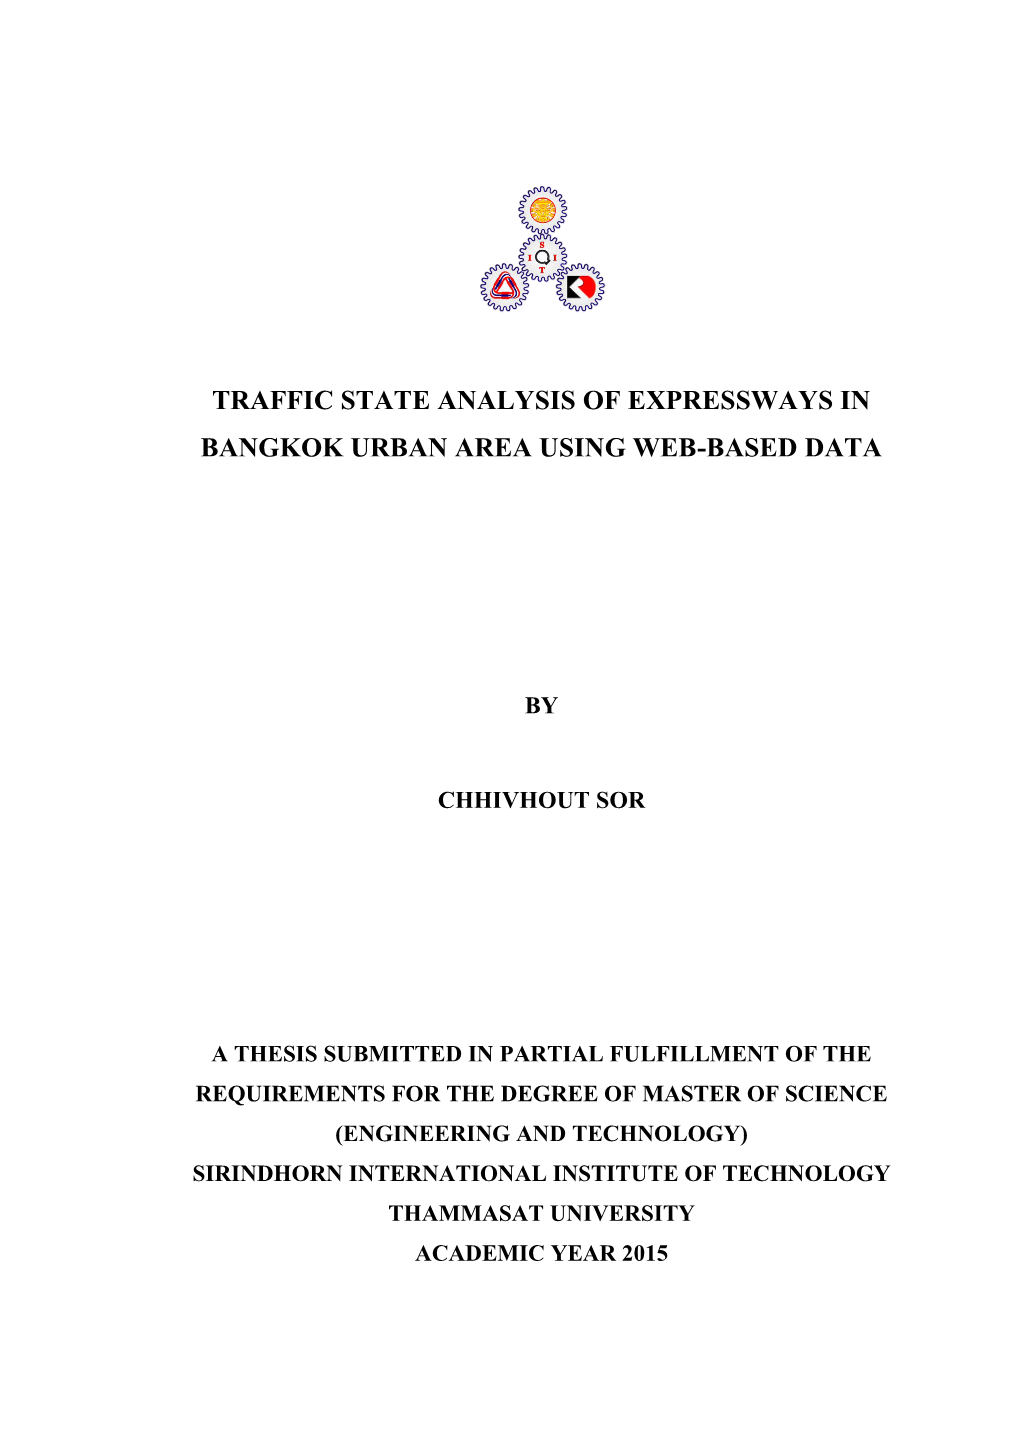 Traffic State Analysis of Expressways in Bangkok Urban Area Using Web-Based Data